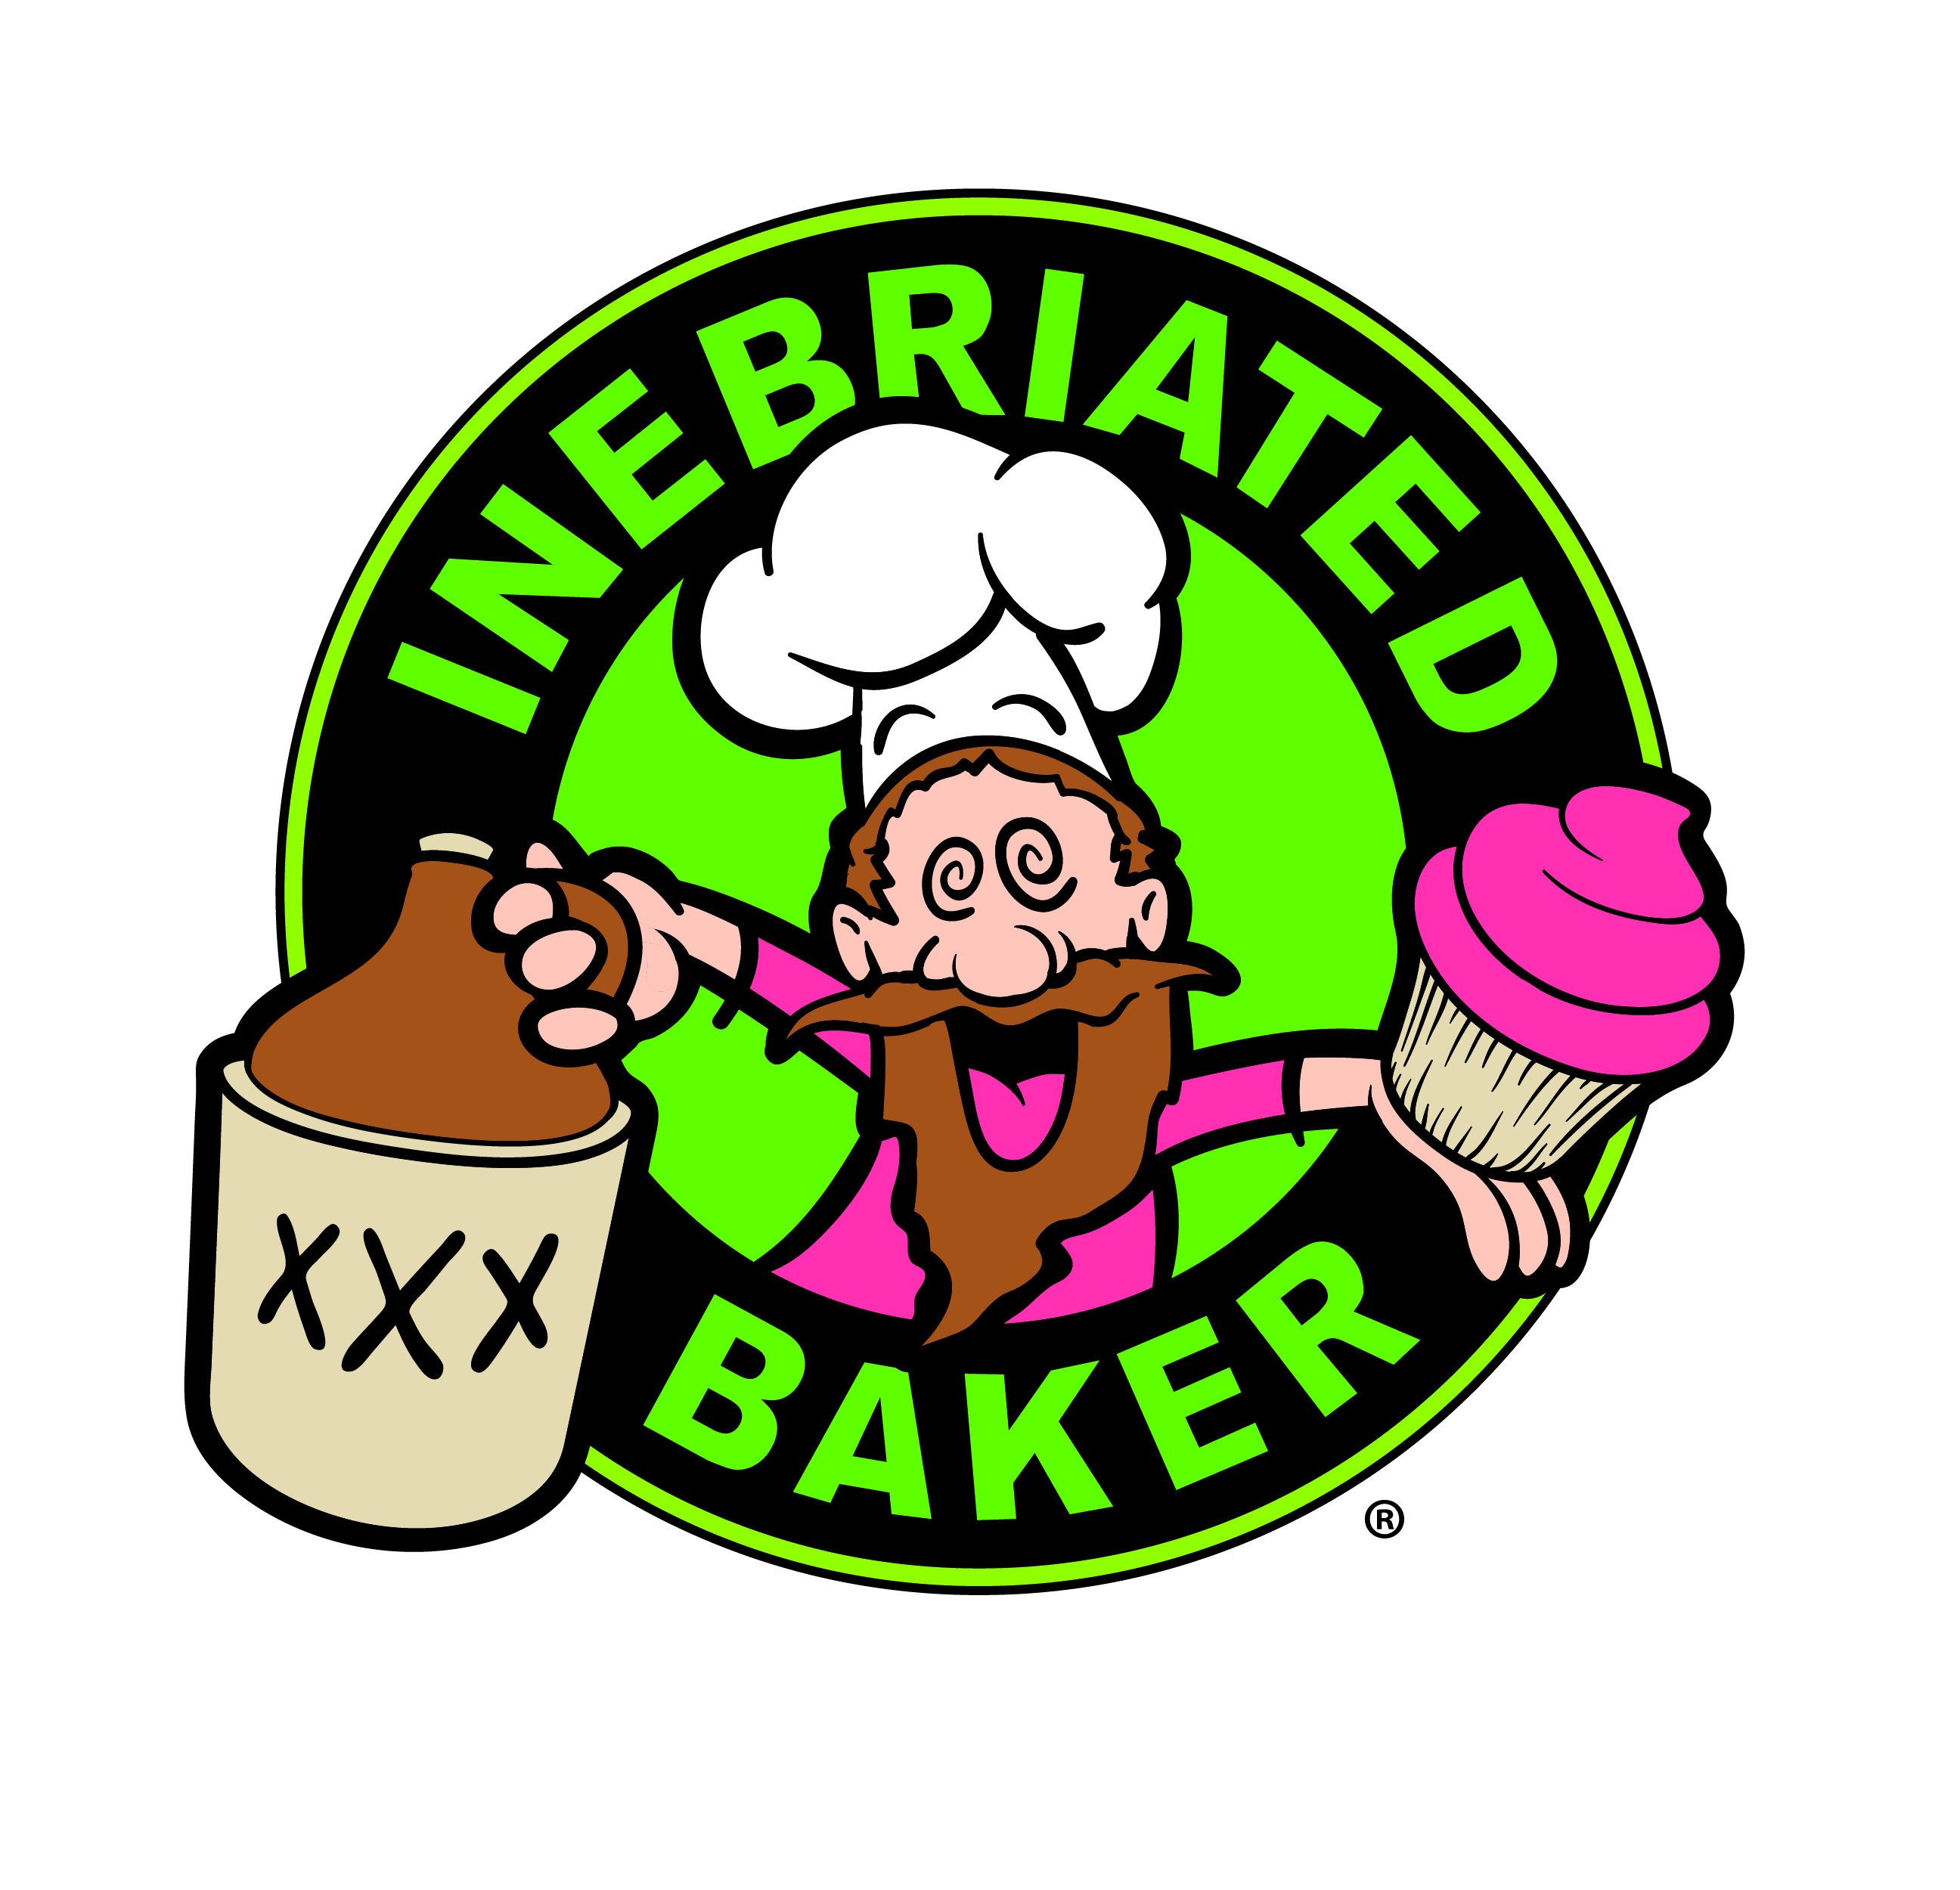 Inebriated Baker logo